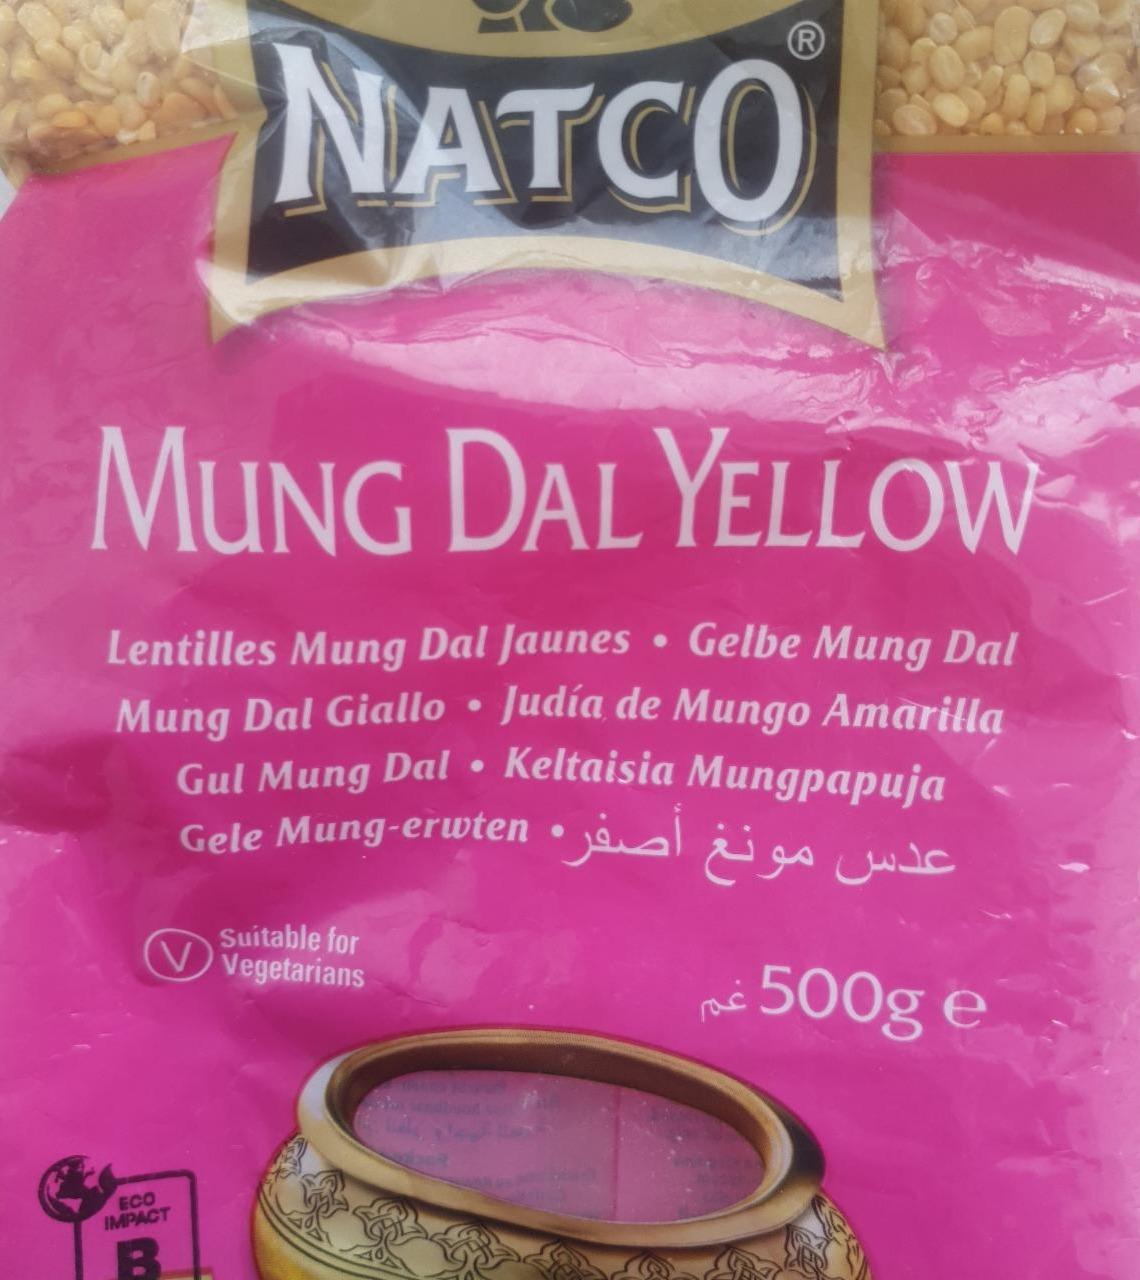 Фото - Mung Dal Yellow Natco